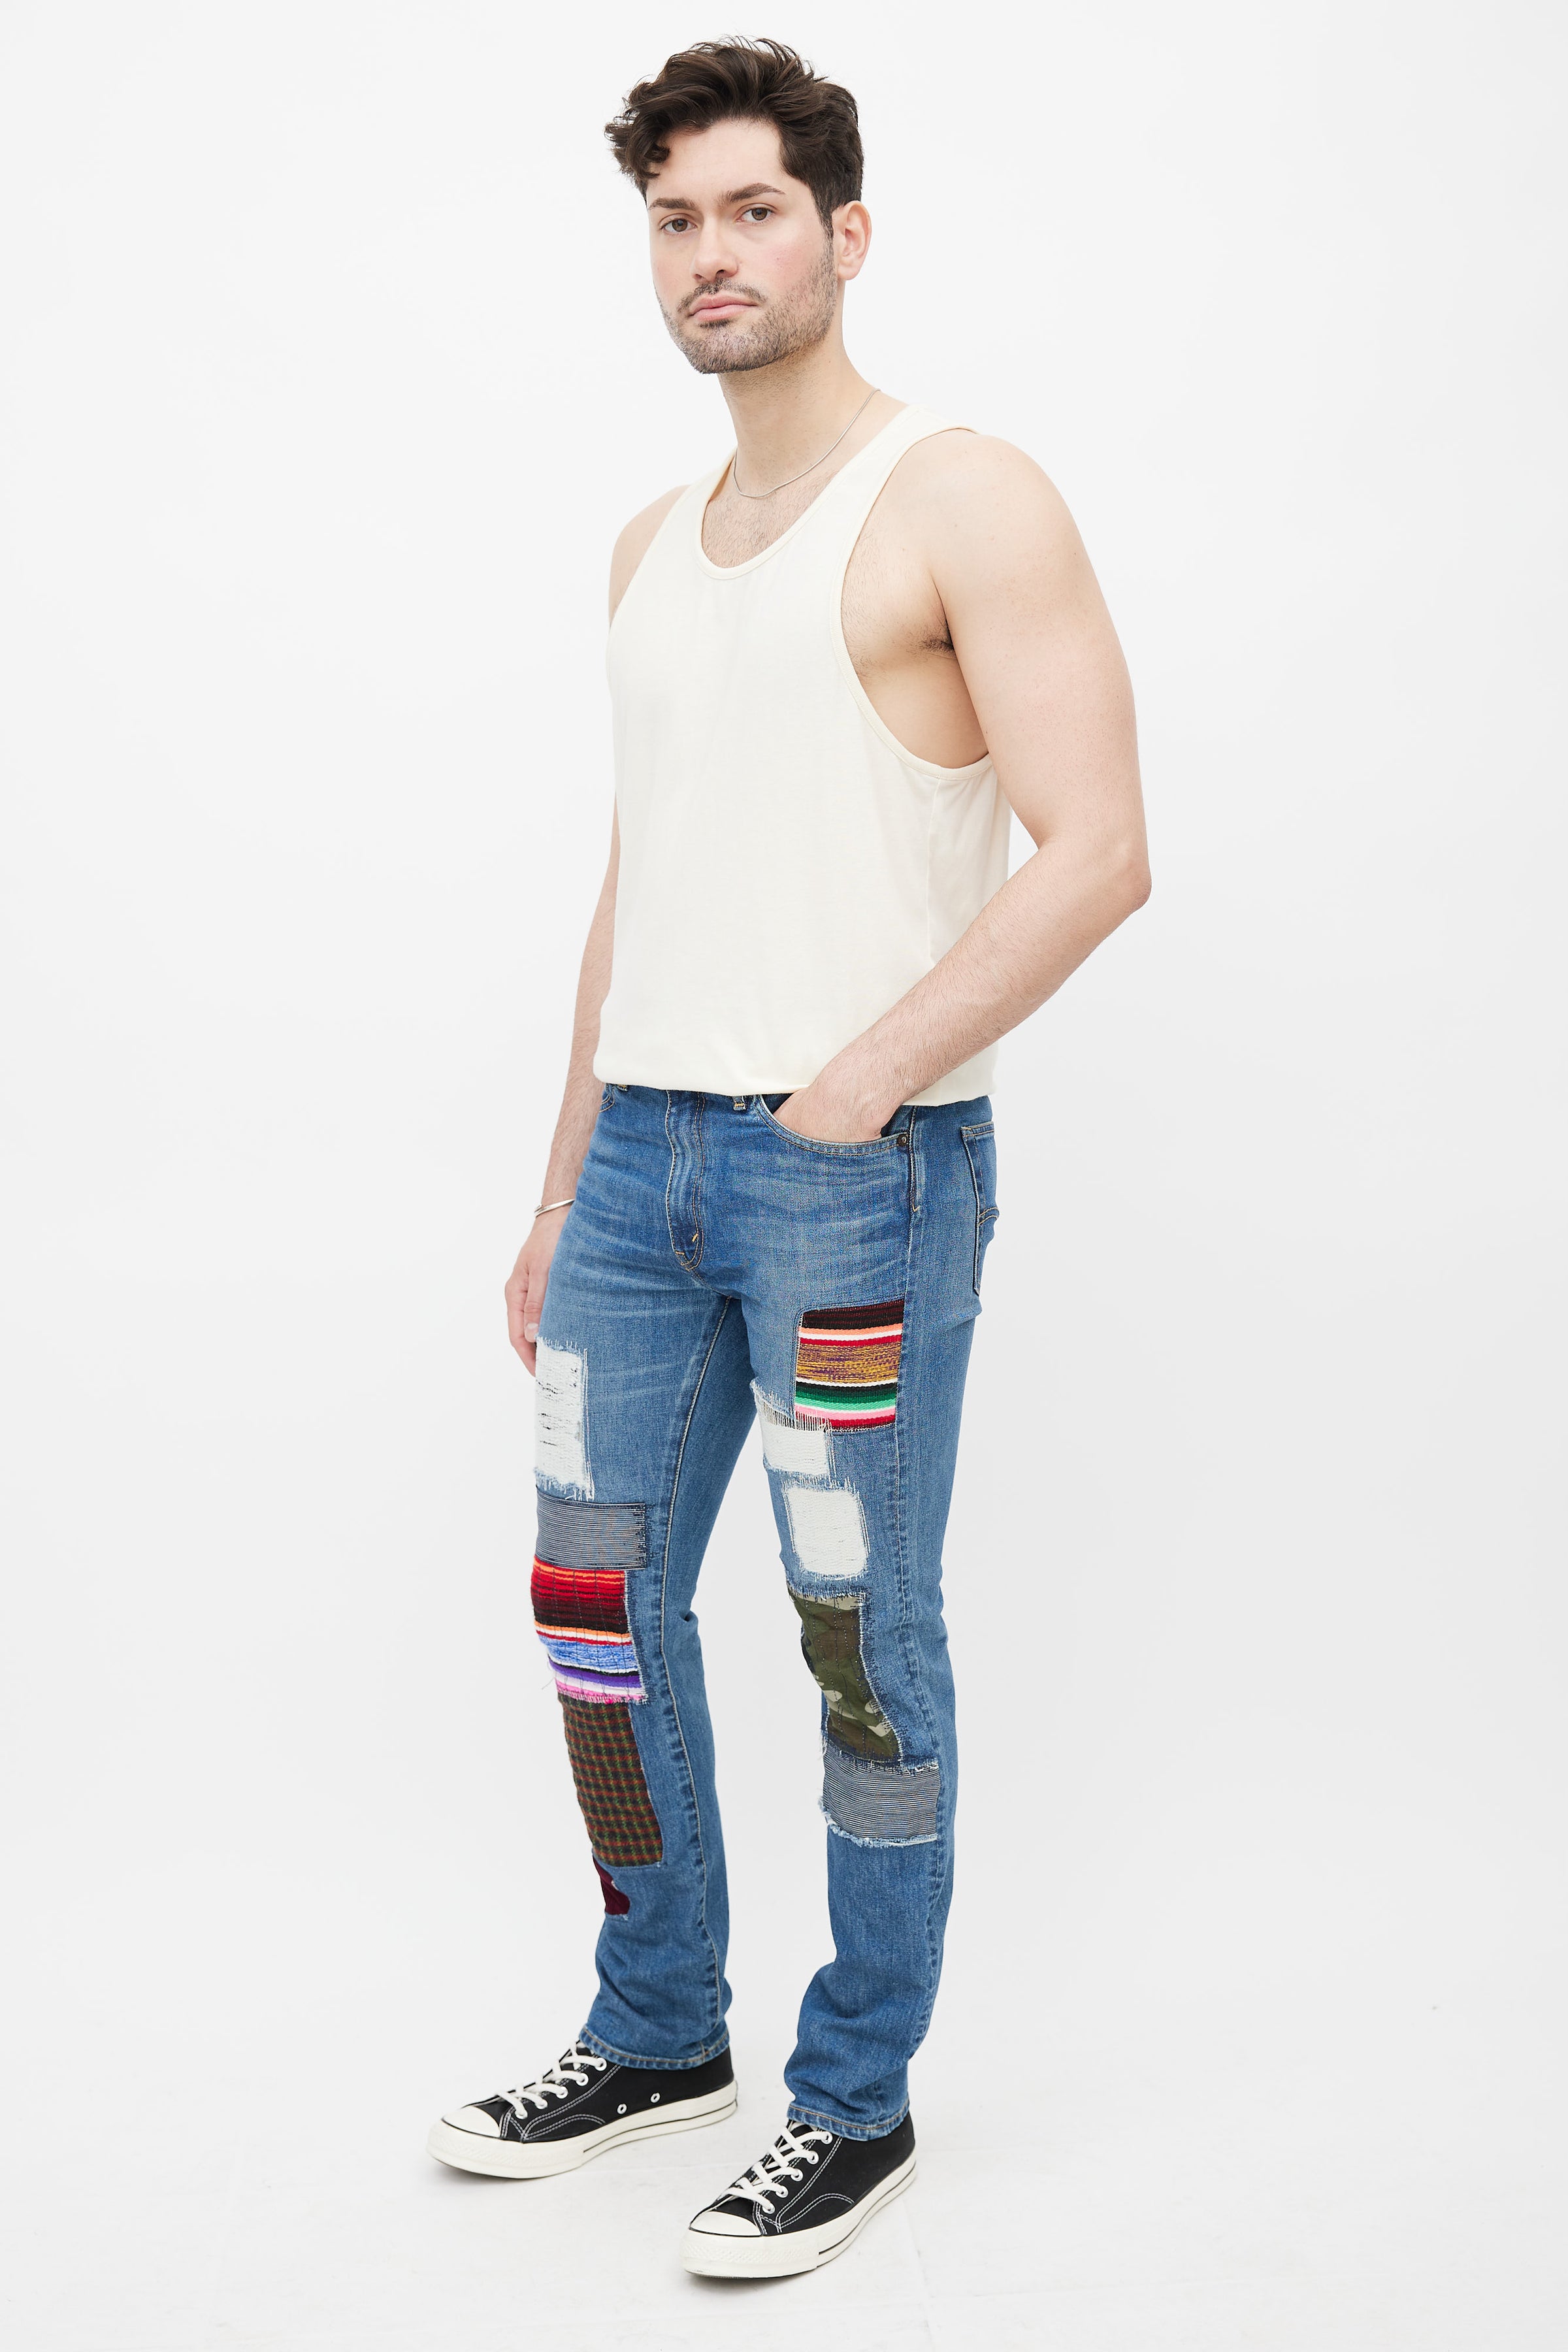 Junya Watanabe // x Levis Blue & Multicolour Patch Denim Jeans